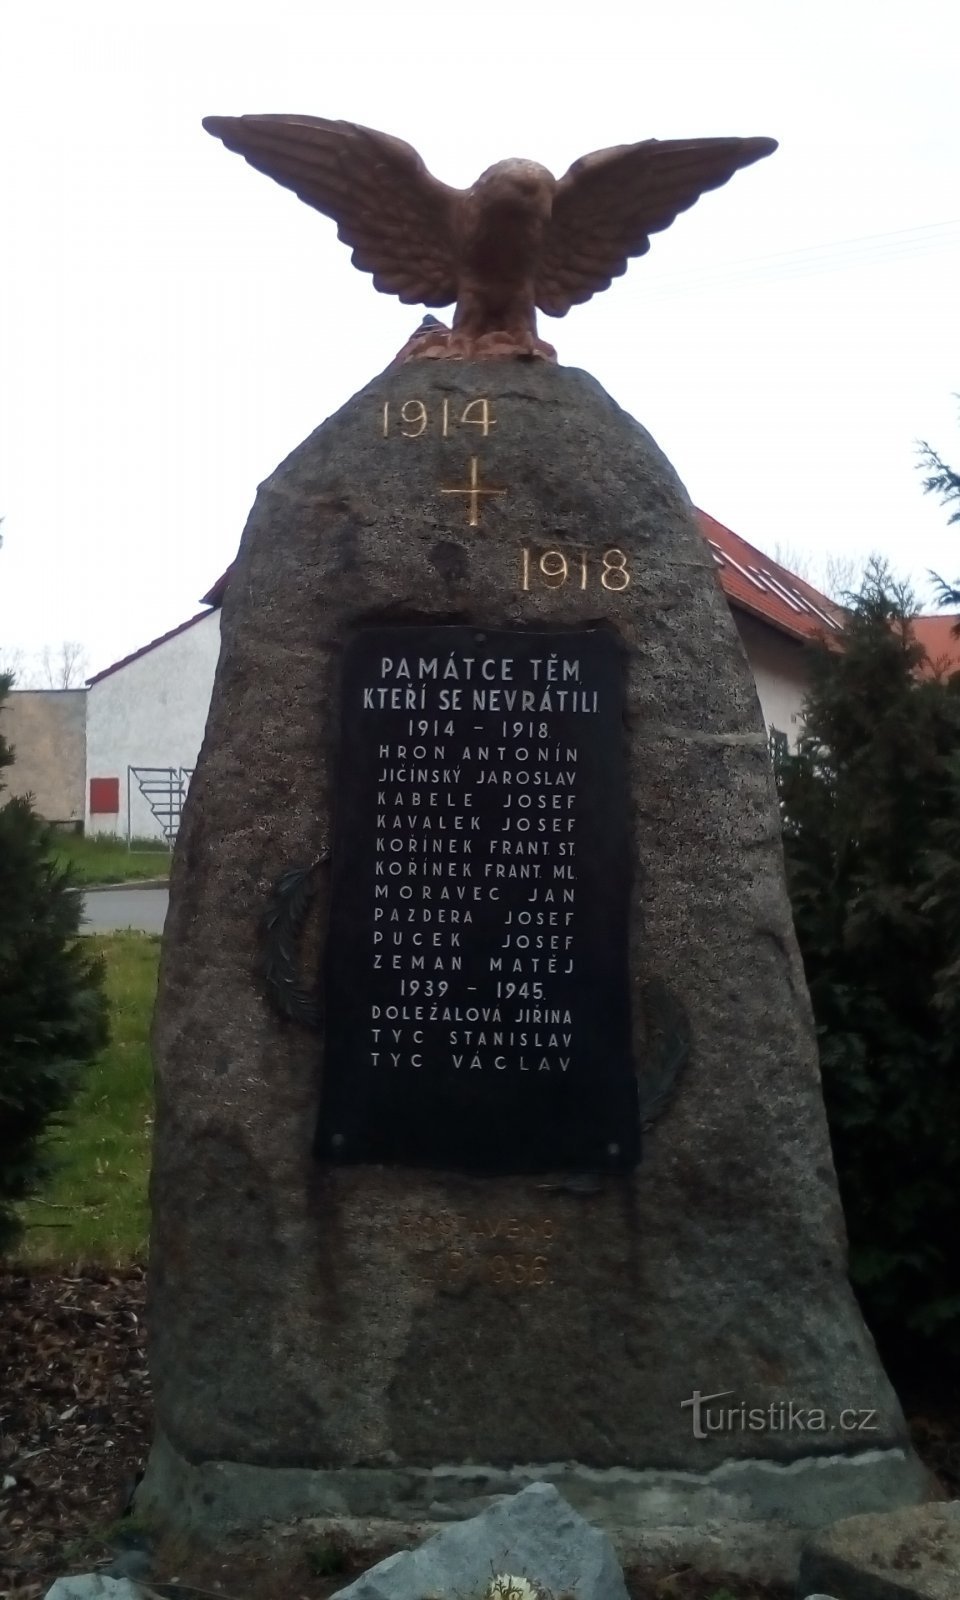 Đài tưởng niệm những người đã ngã xuống ở Dražkovice